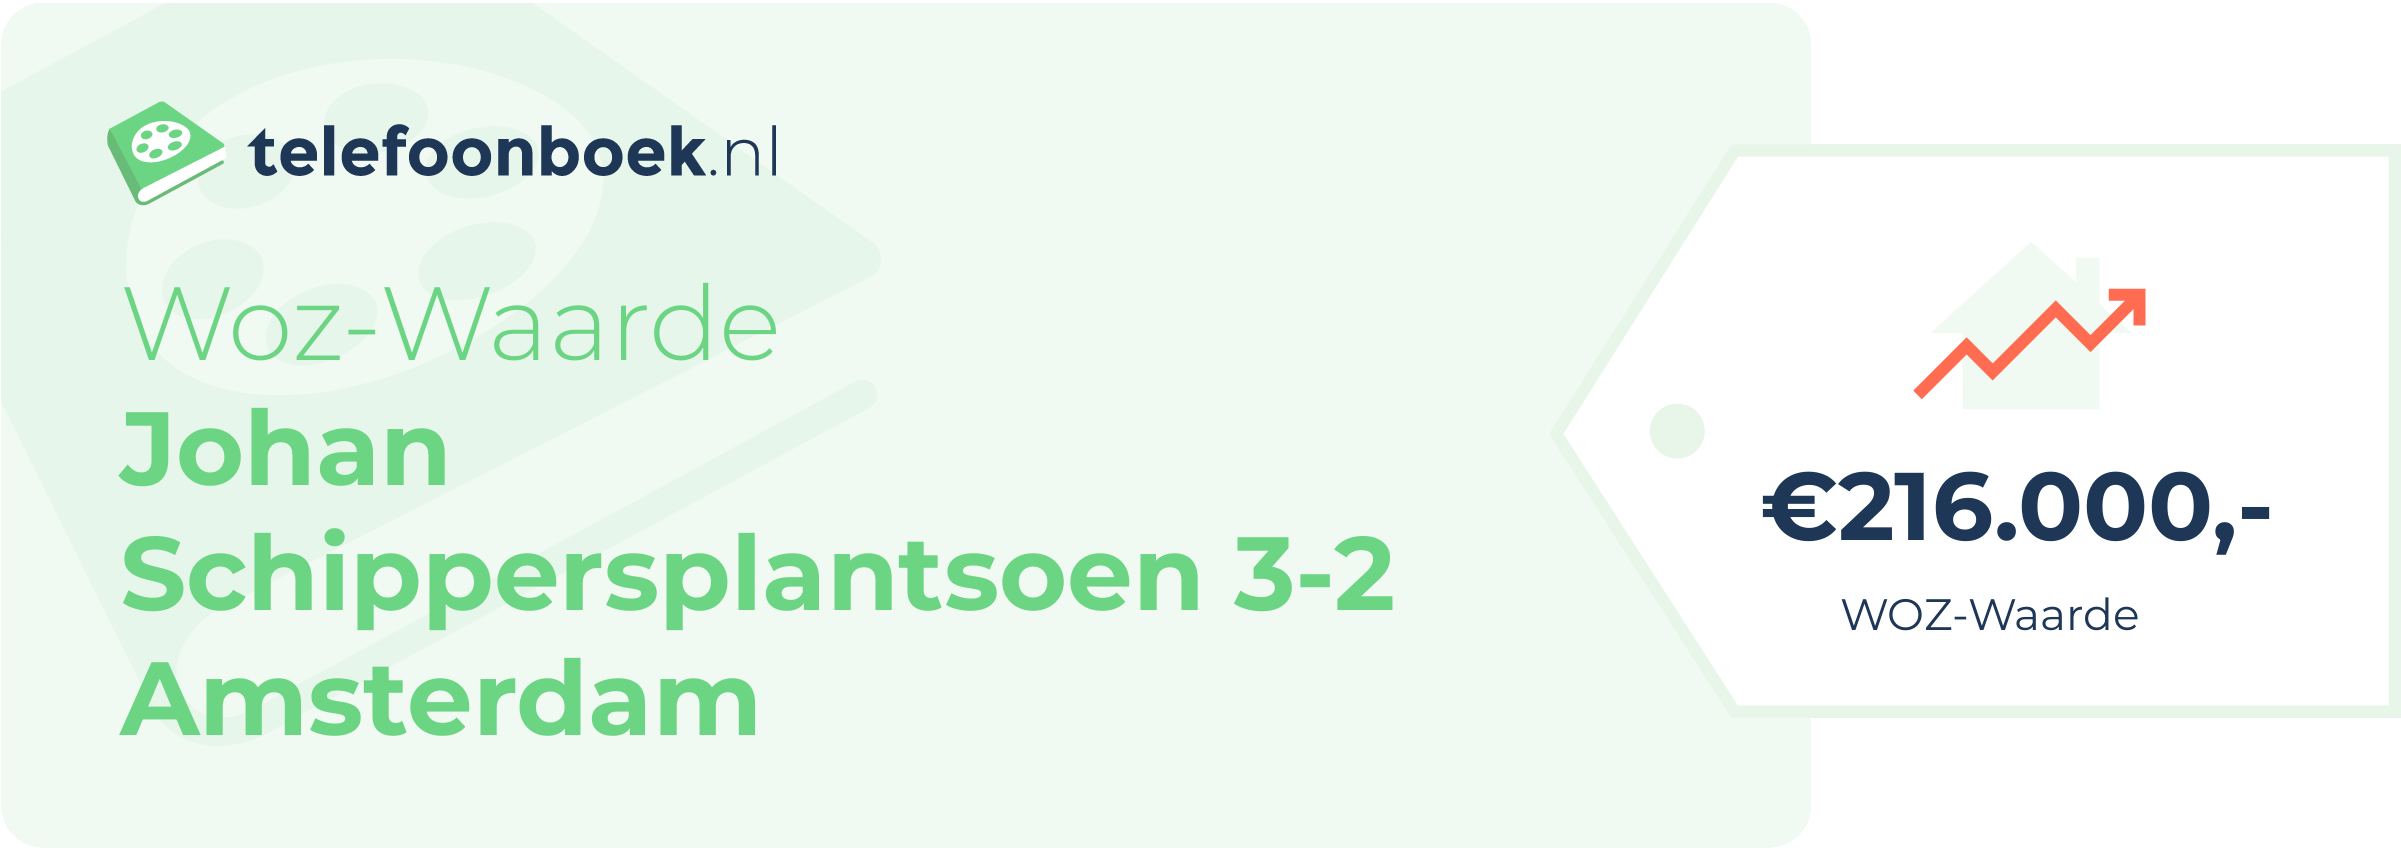 WOZ-waarde Johan Schippersplantsoen 3-2 Amsterdam